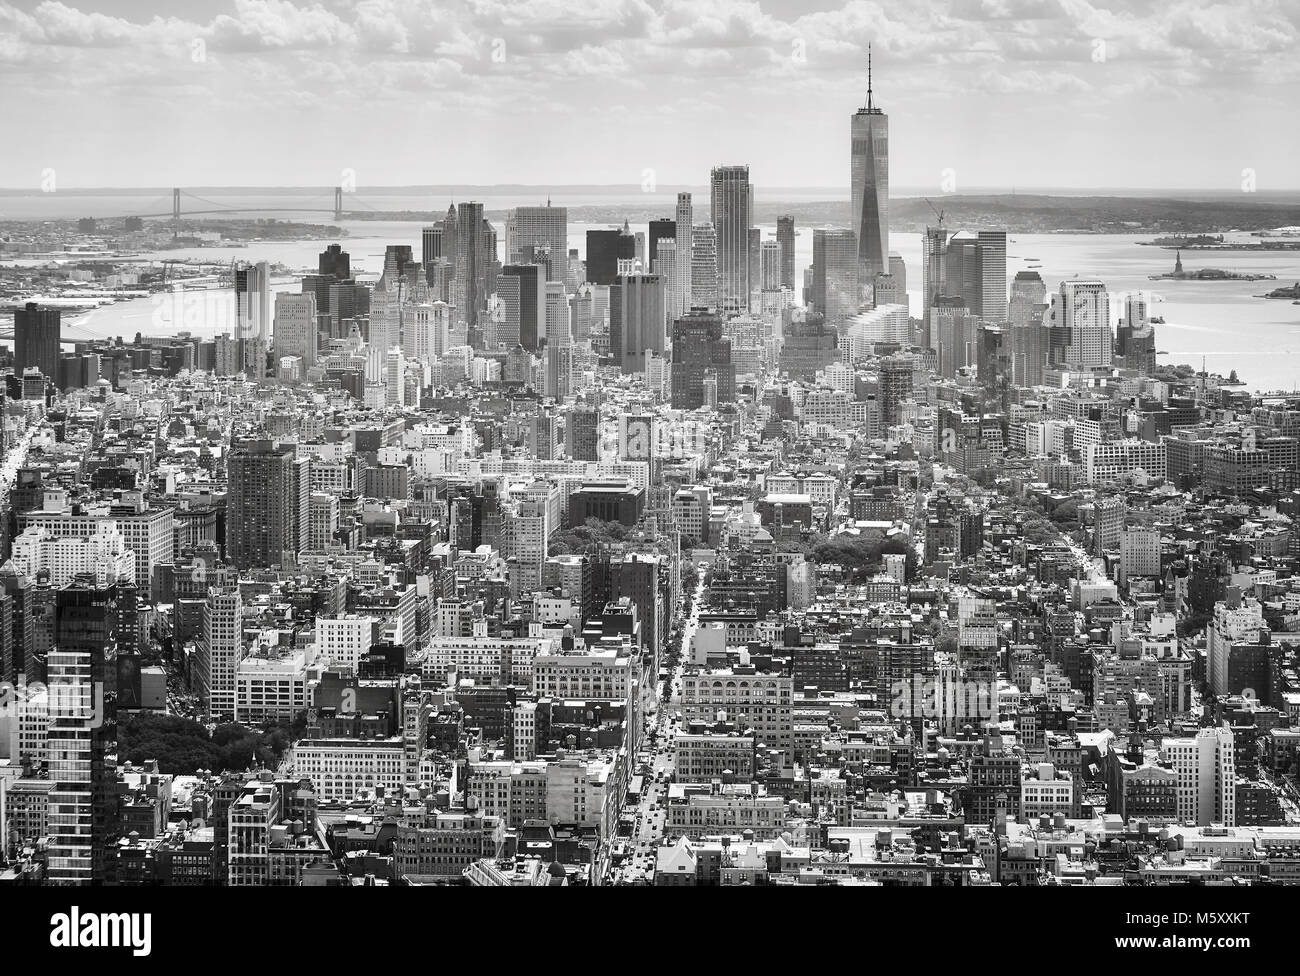 Immagine in bianco e nero dello skyline di New York City, Stati Uniti d'America. Foto Stock